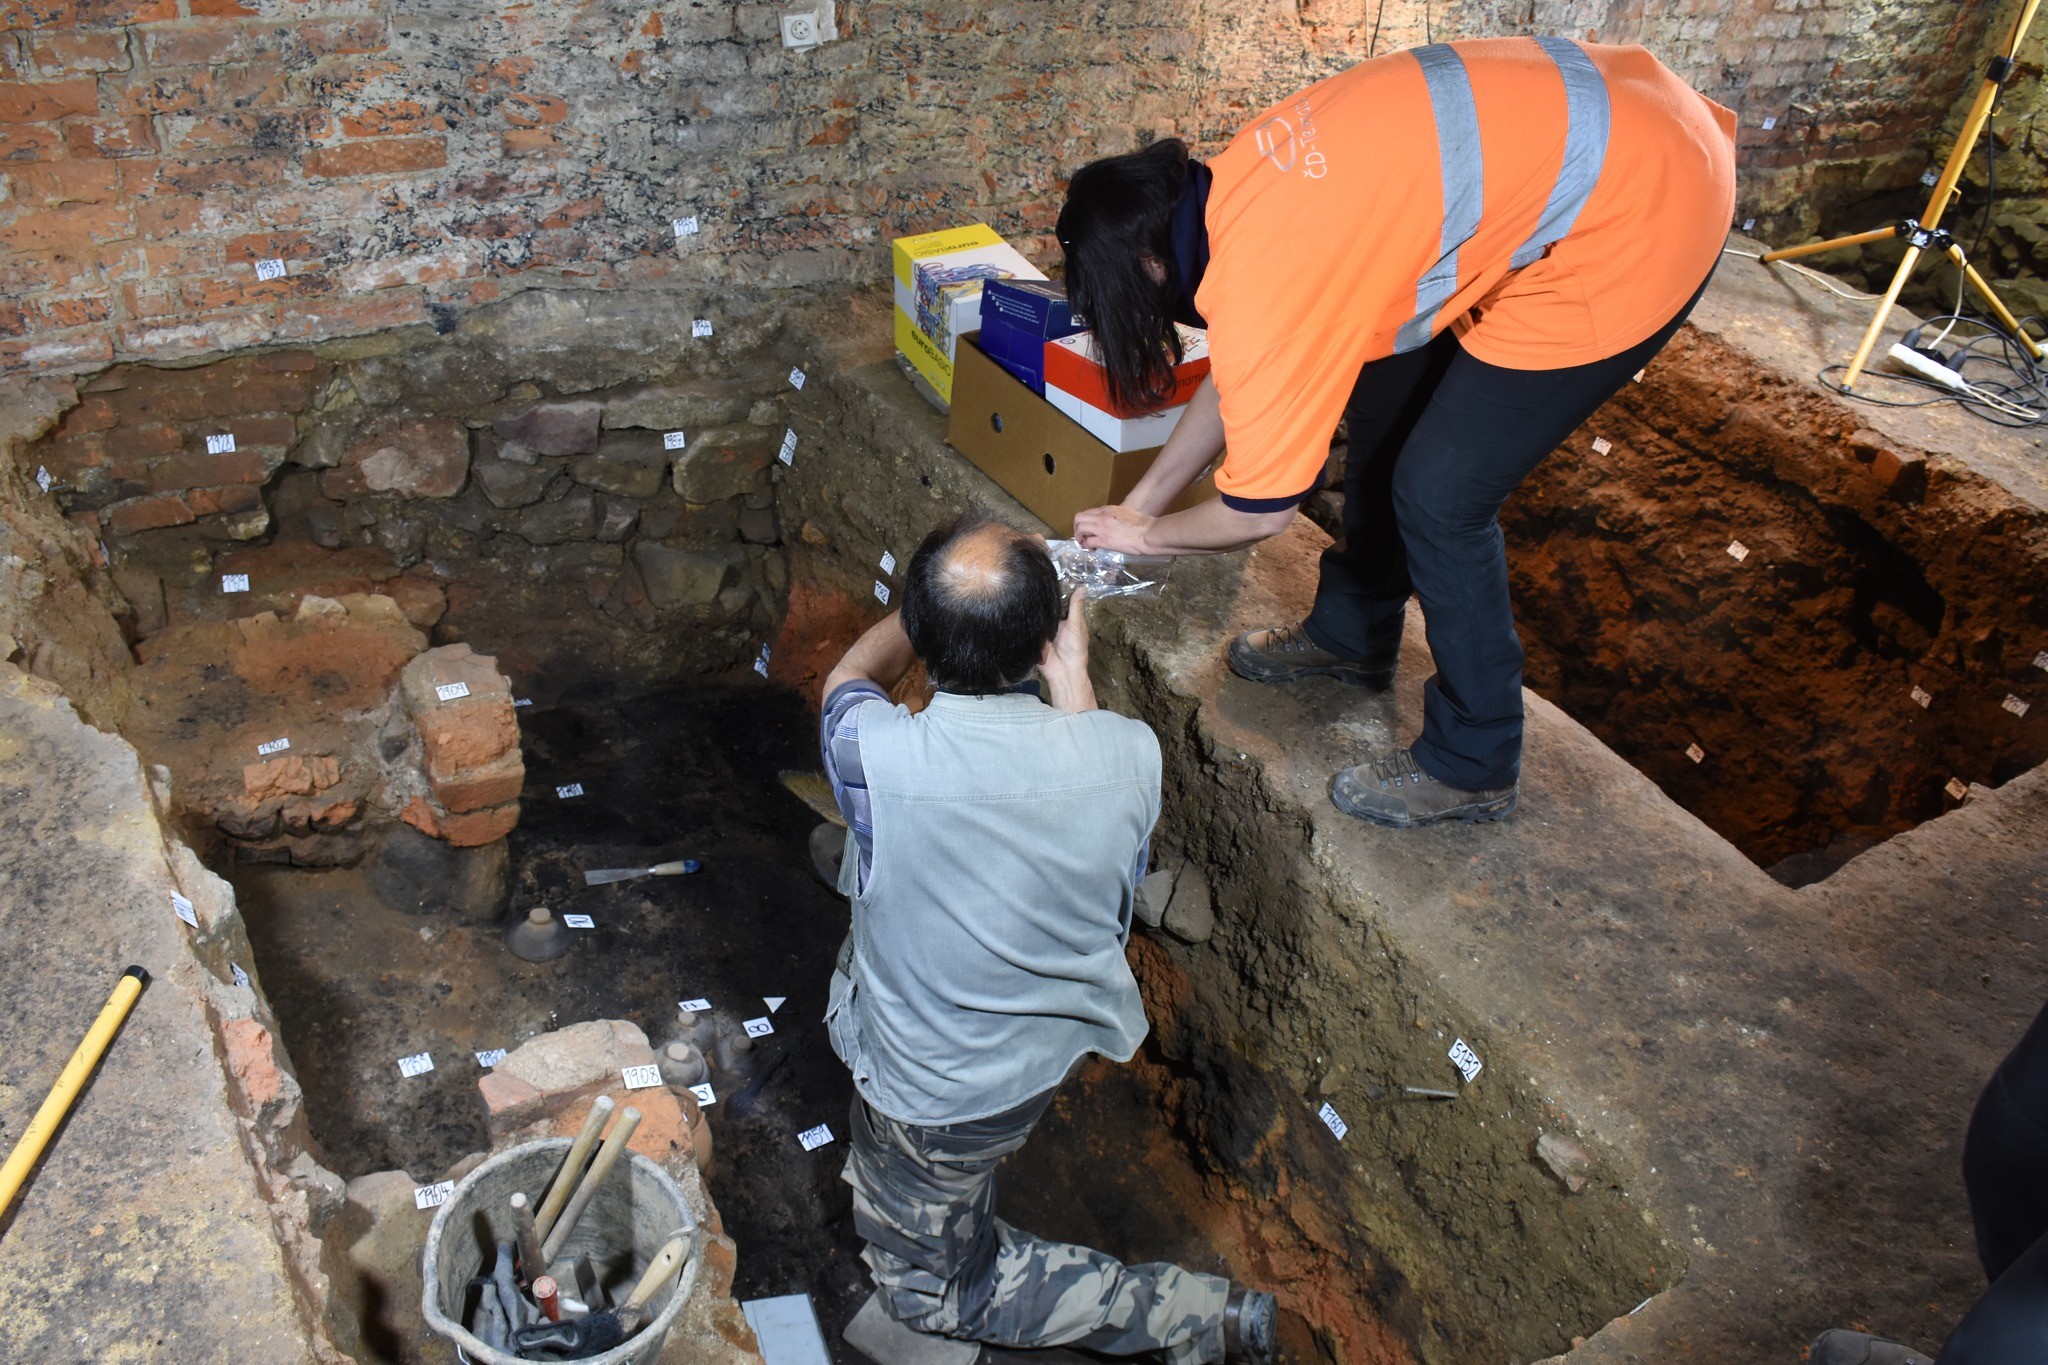 Arqueólogos descobriram potes de cerâmica intactos durante a investigação na cozinha  (Foto: Národní památkový ústav/Facebook/Reprodução)